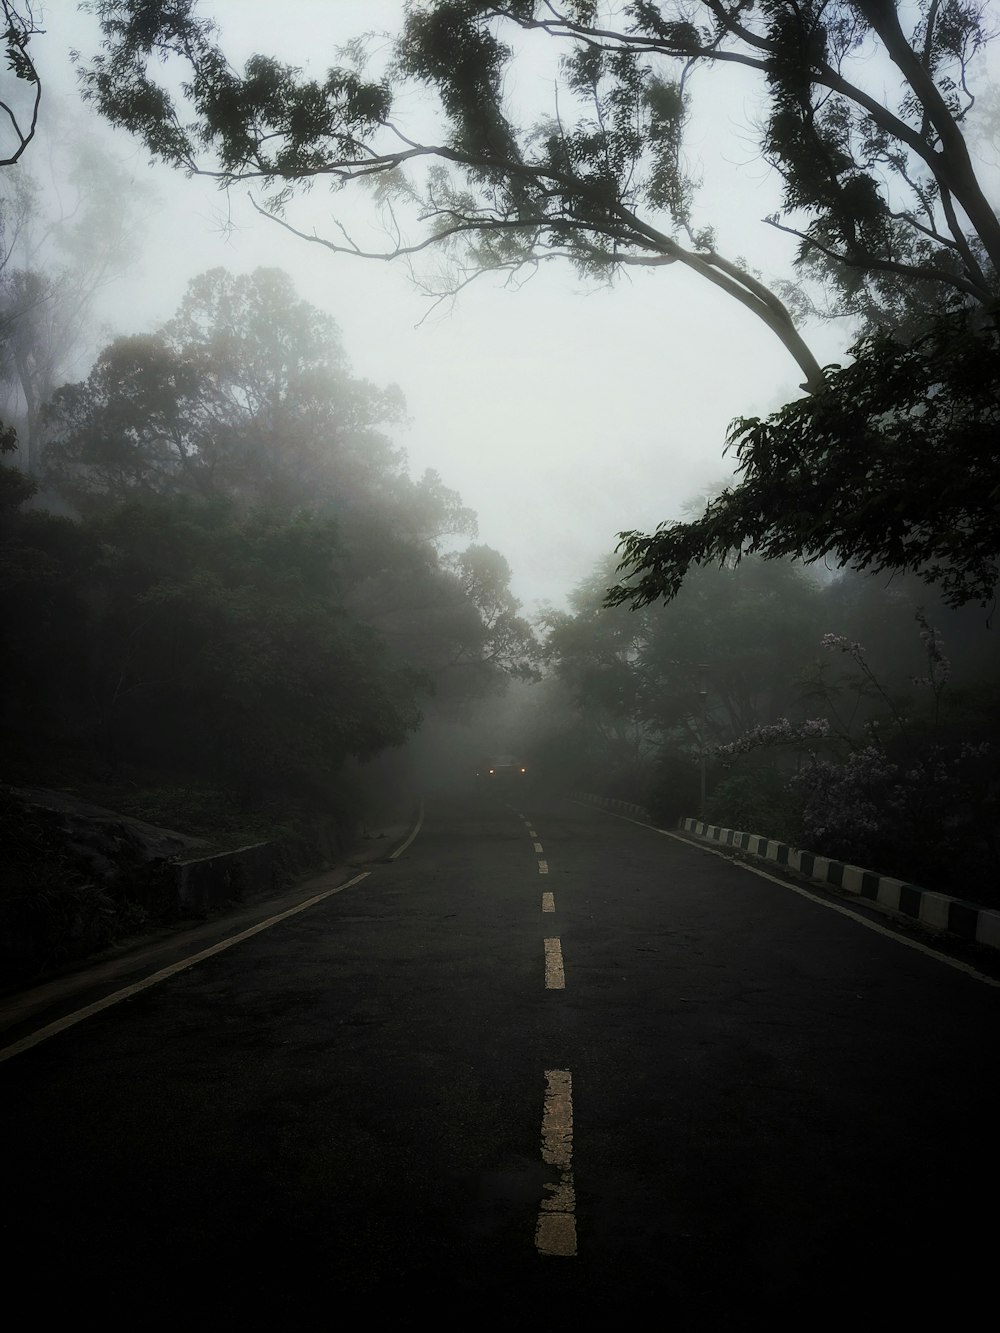 Carretera de asfalto negro entre árboles verdes cubiertos de niebla durante el día